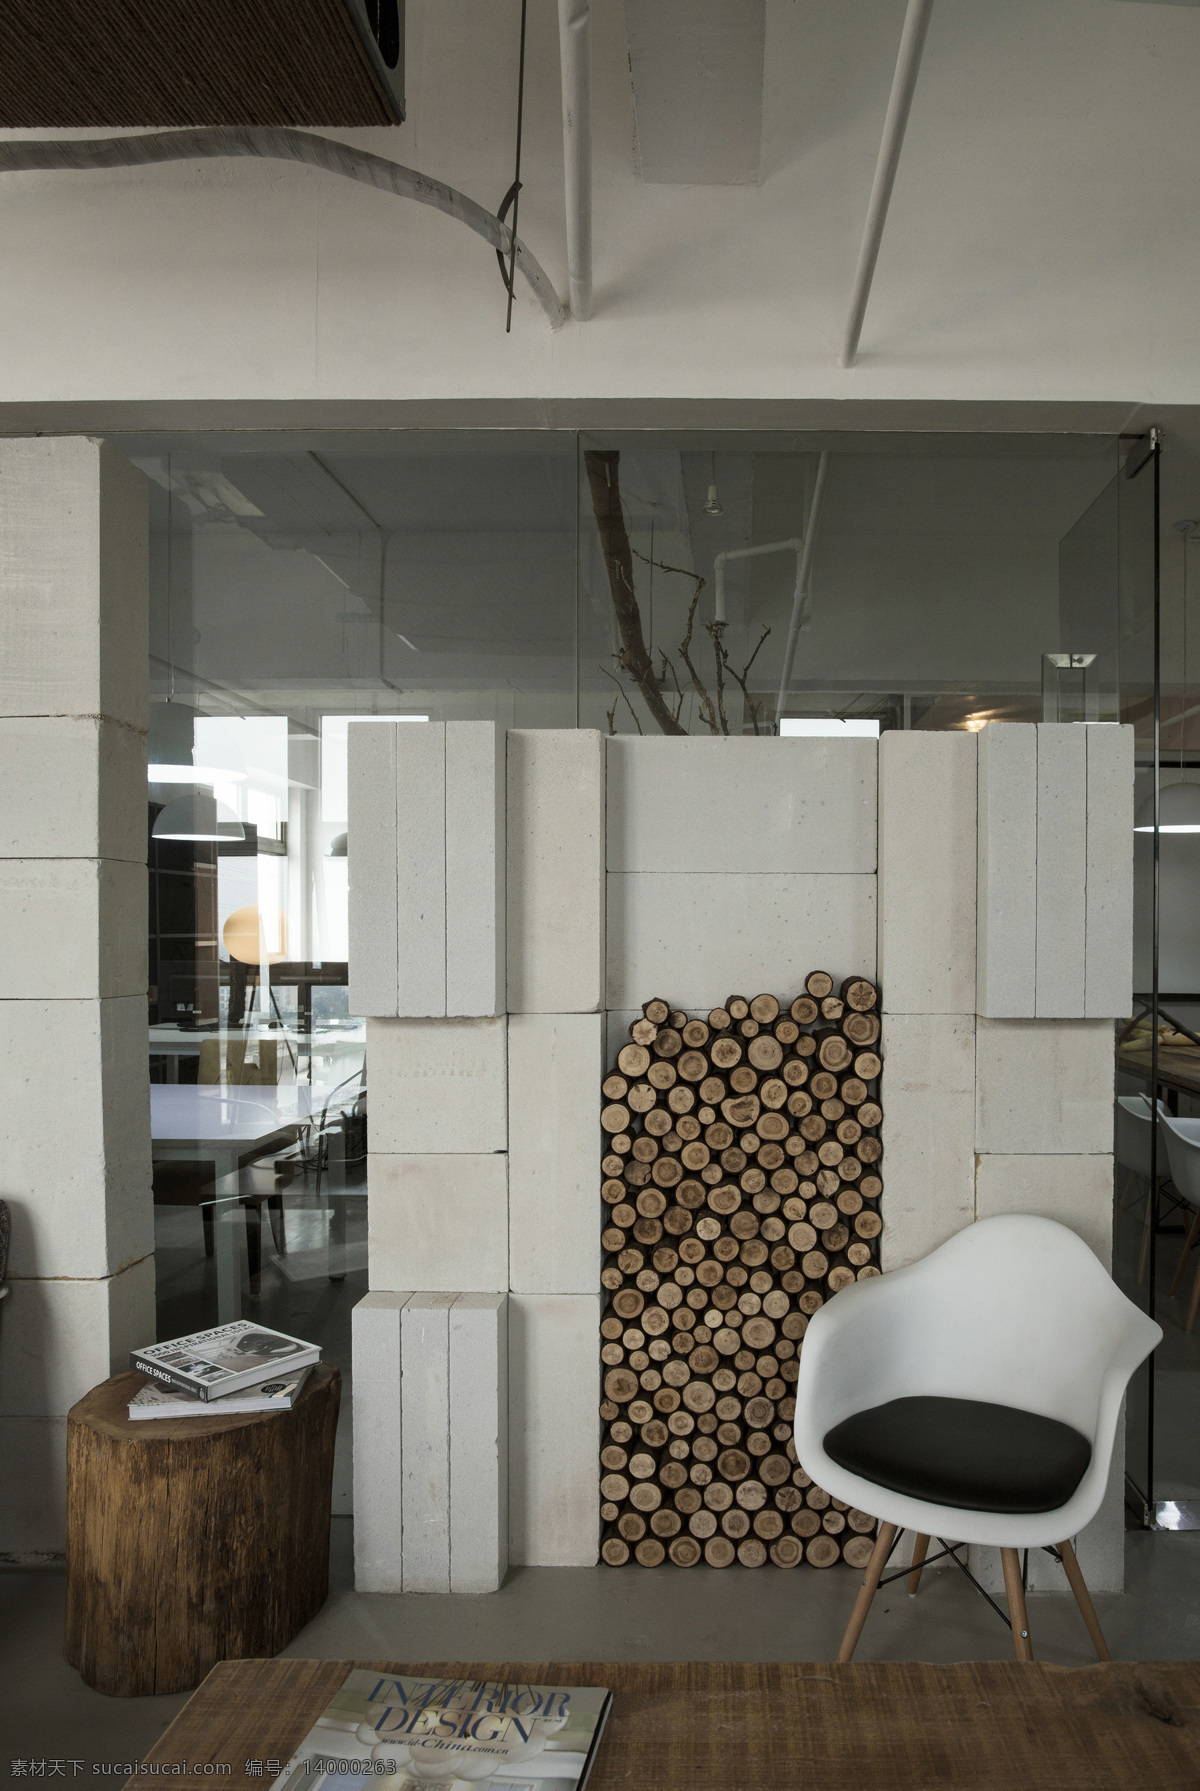 欧式 风格 办公室 装修 效果图 办公室效果图 工装 灰色 会议室效果图 室内 制作